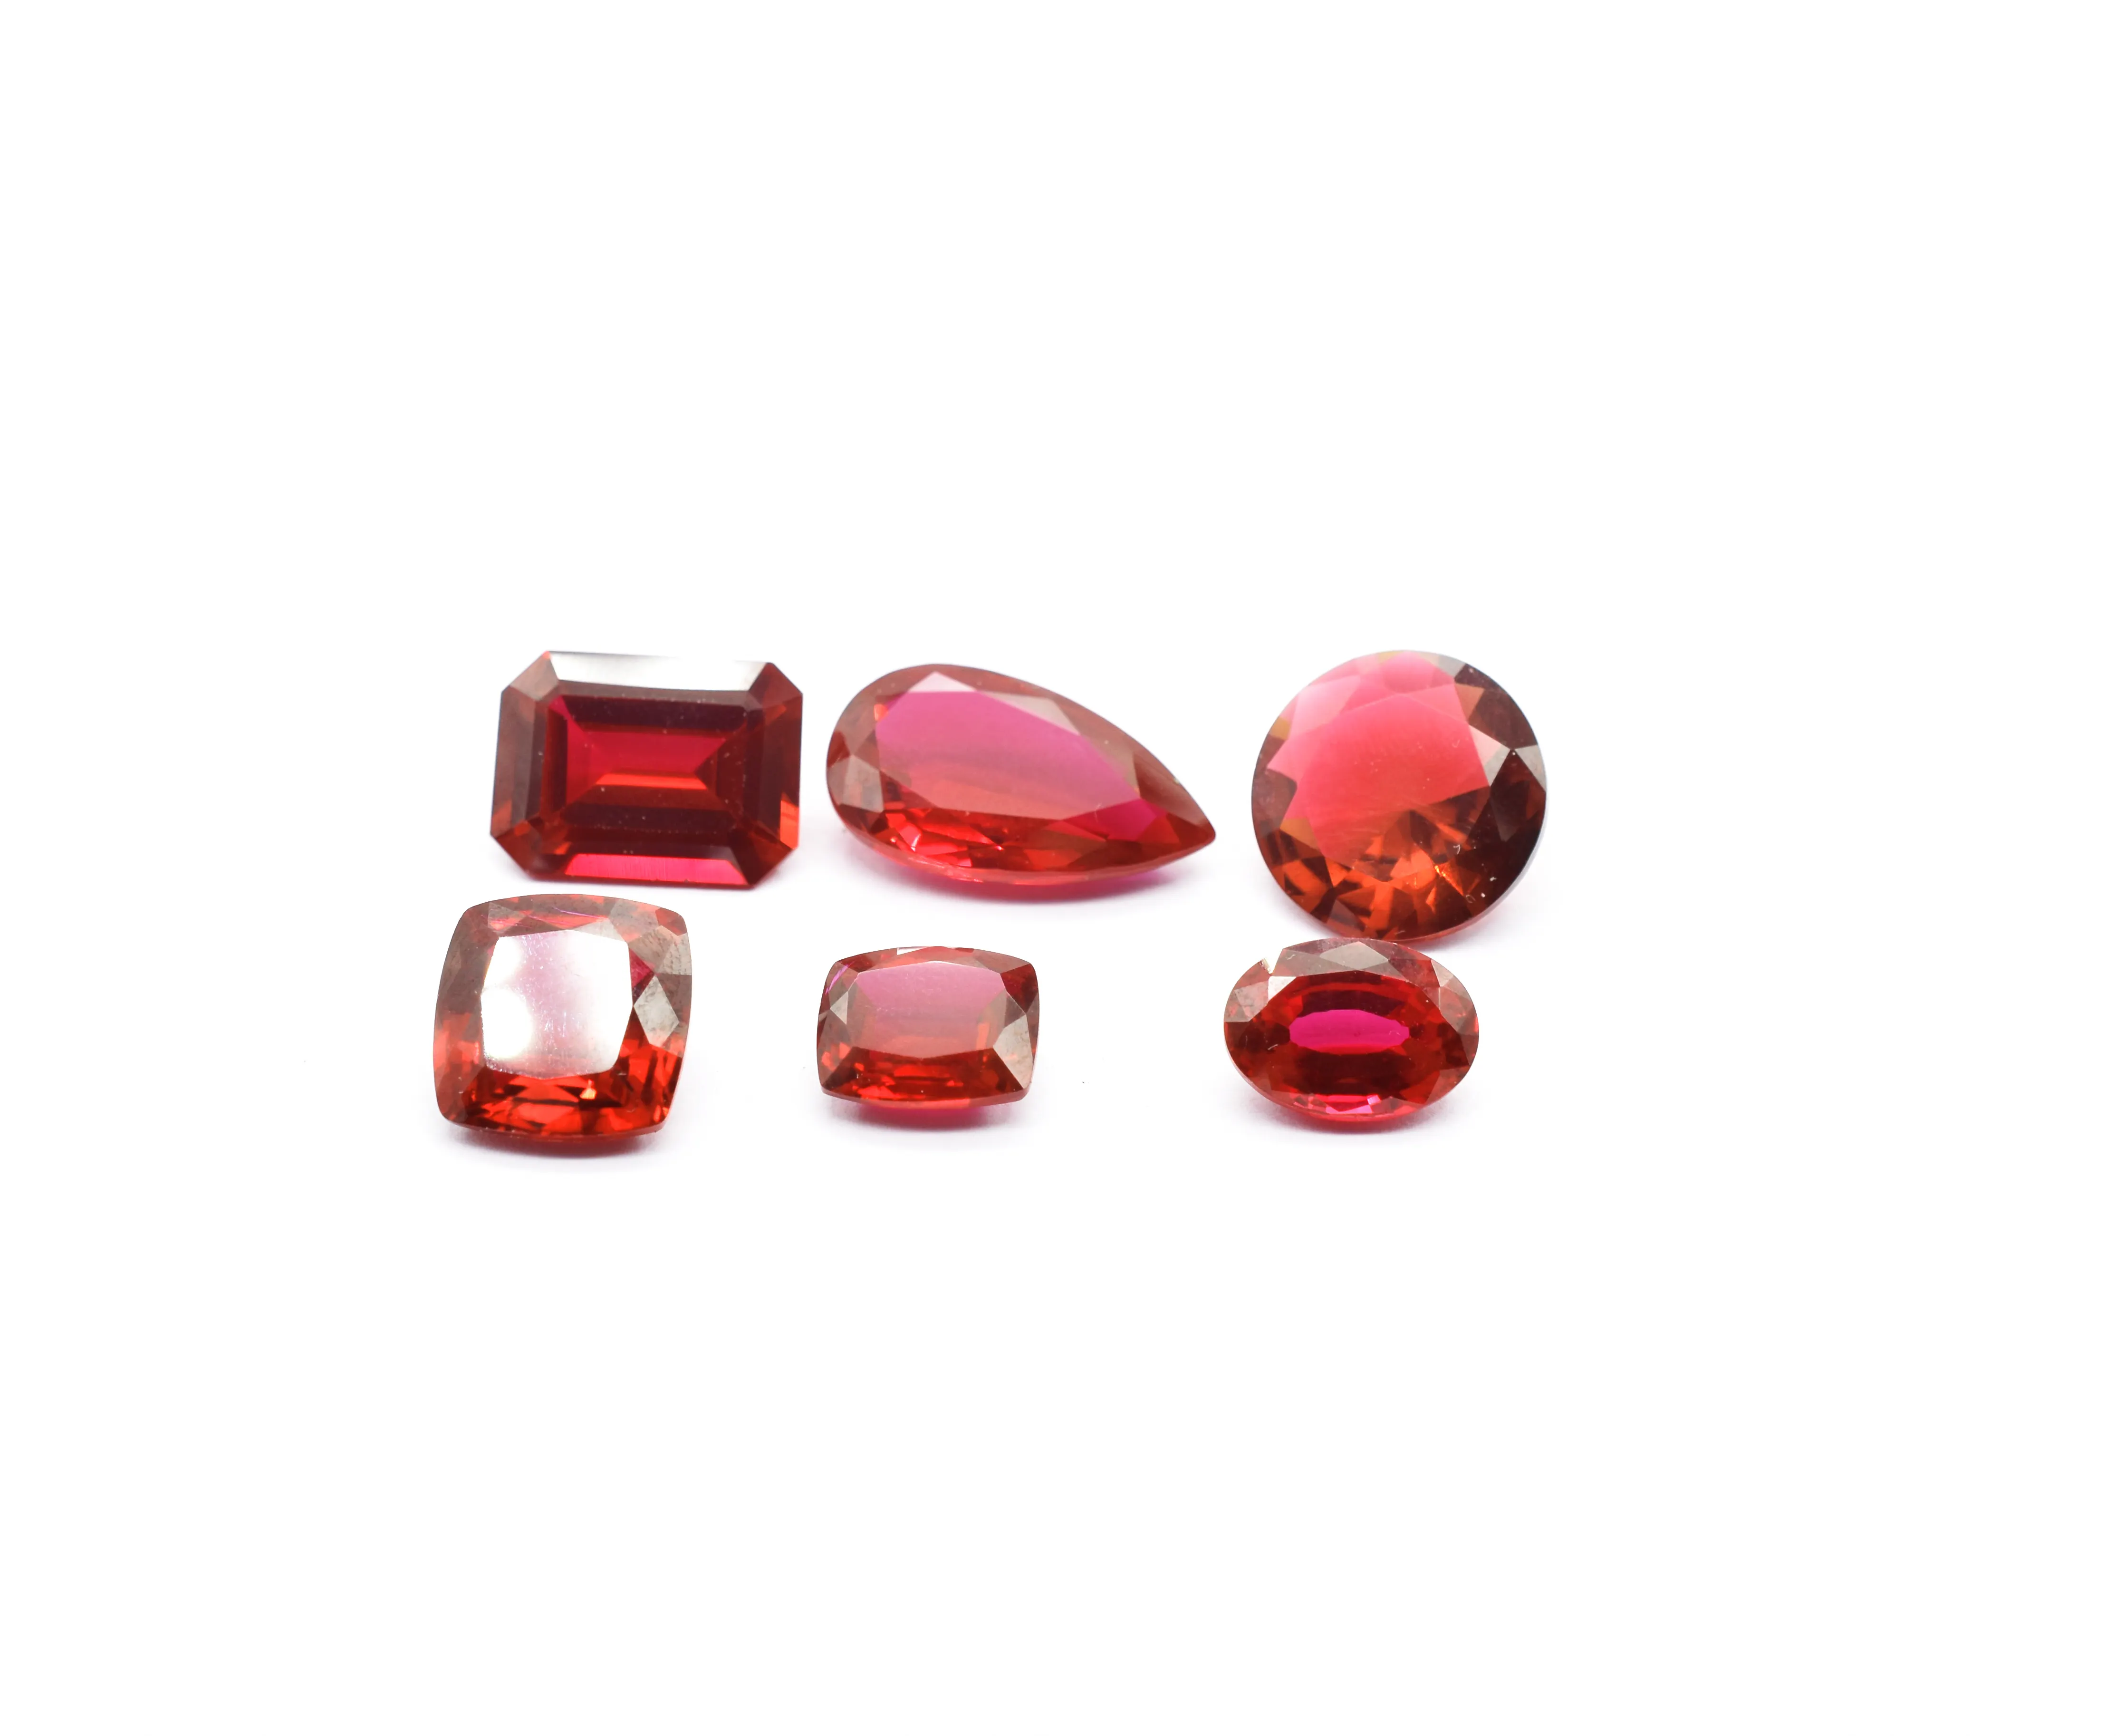 Ruby cắt đá quý phòng thí nghiệm phát triển tất cả các kích cỡ & Hình dạng có sẵn độ cứng 9 Ruby Corundum đá quý đối với trang sức (giả)